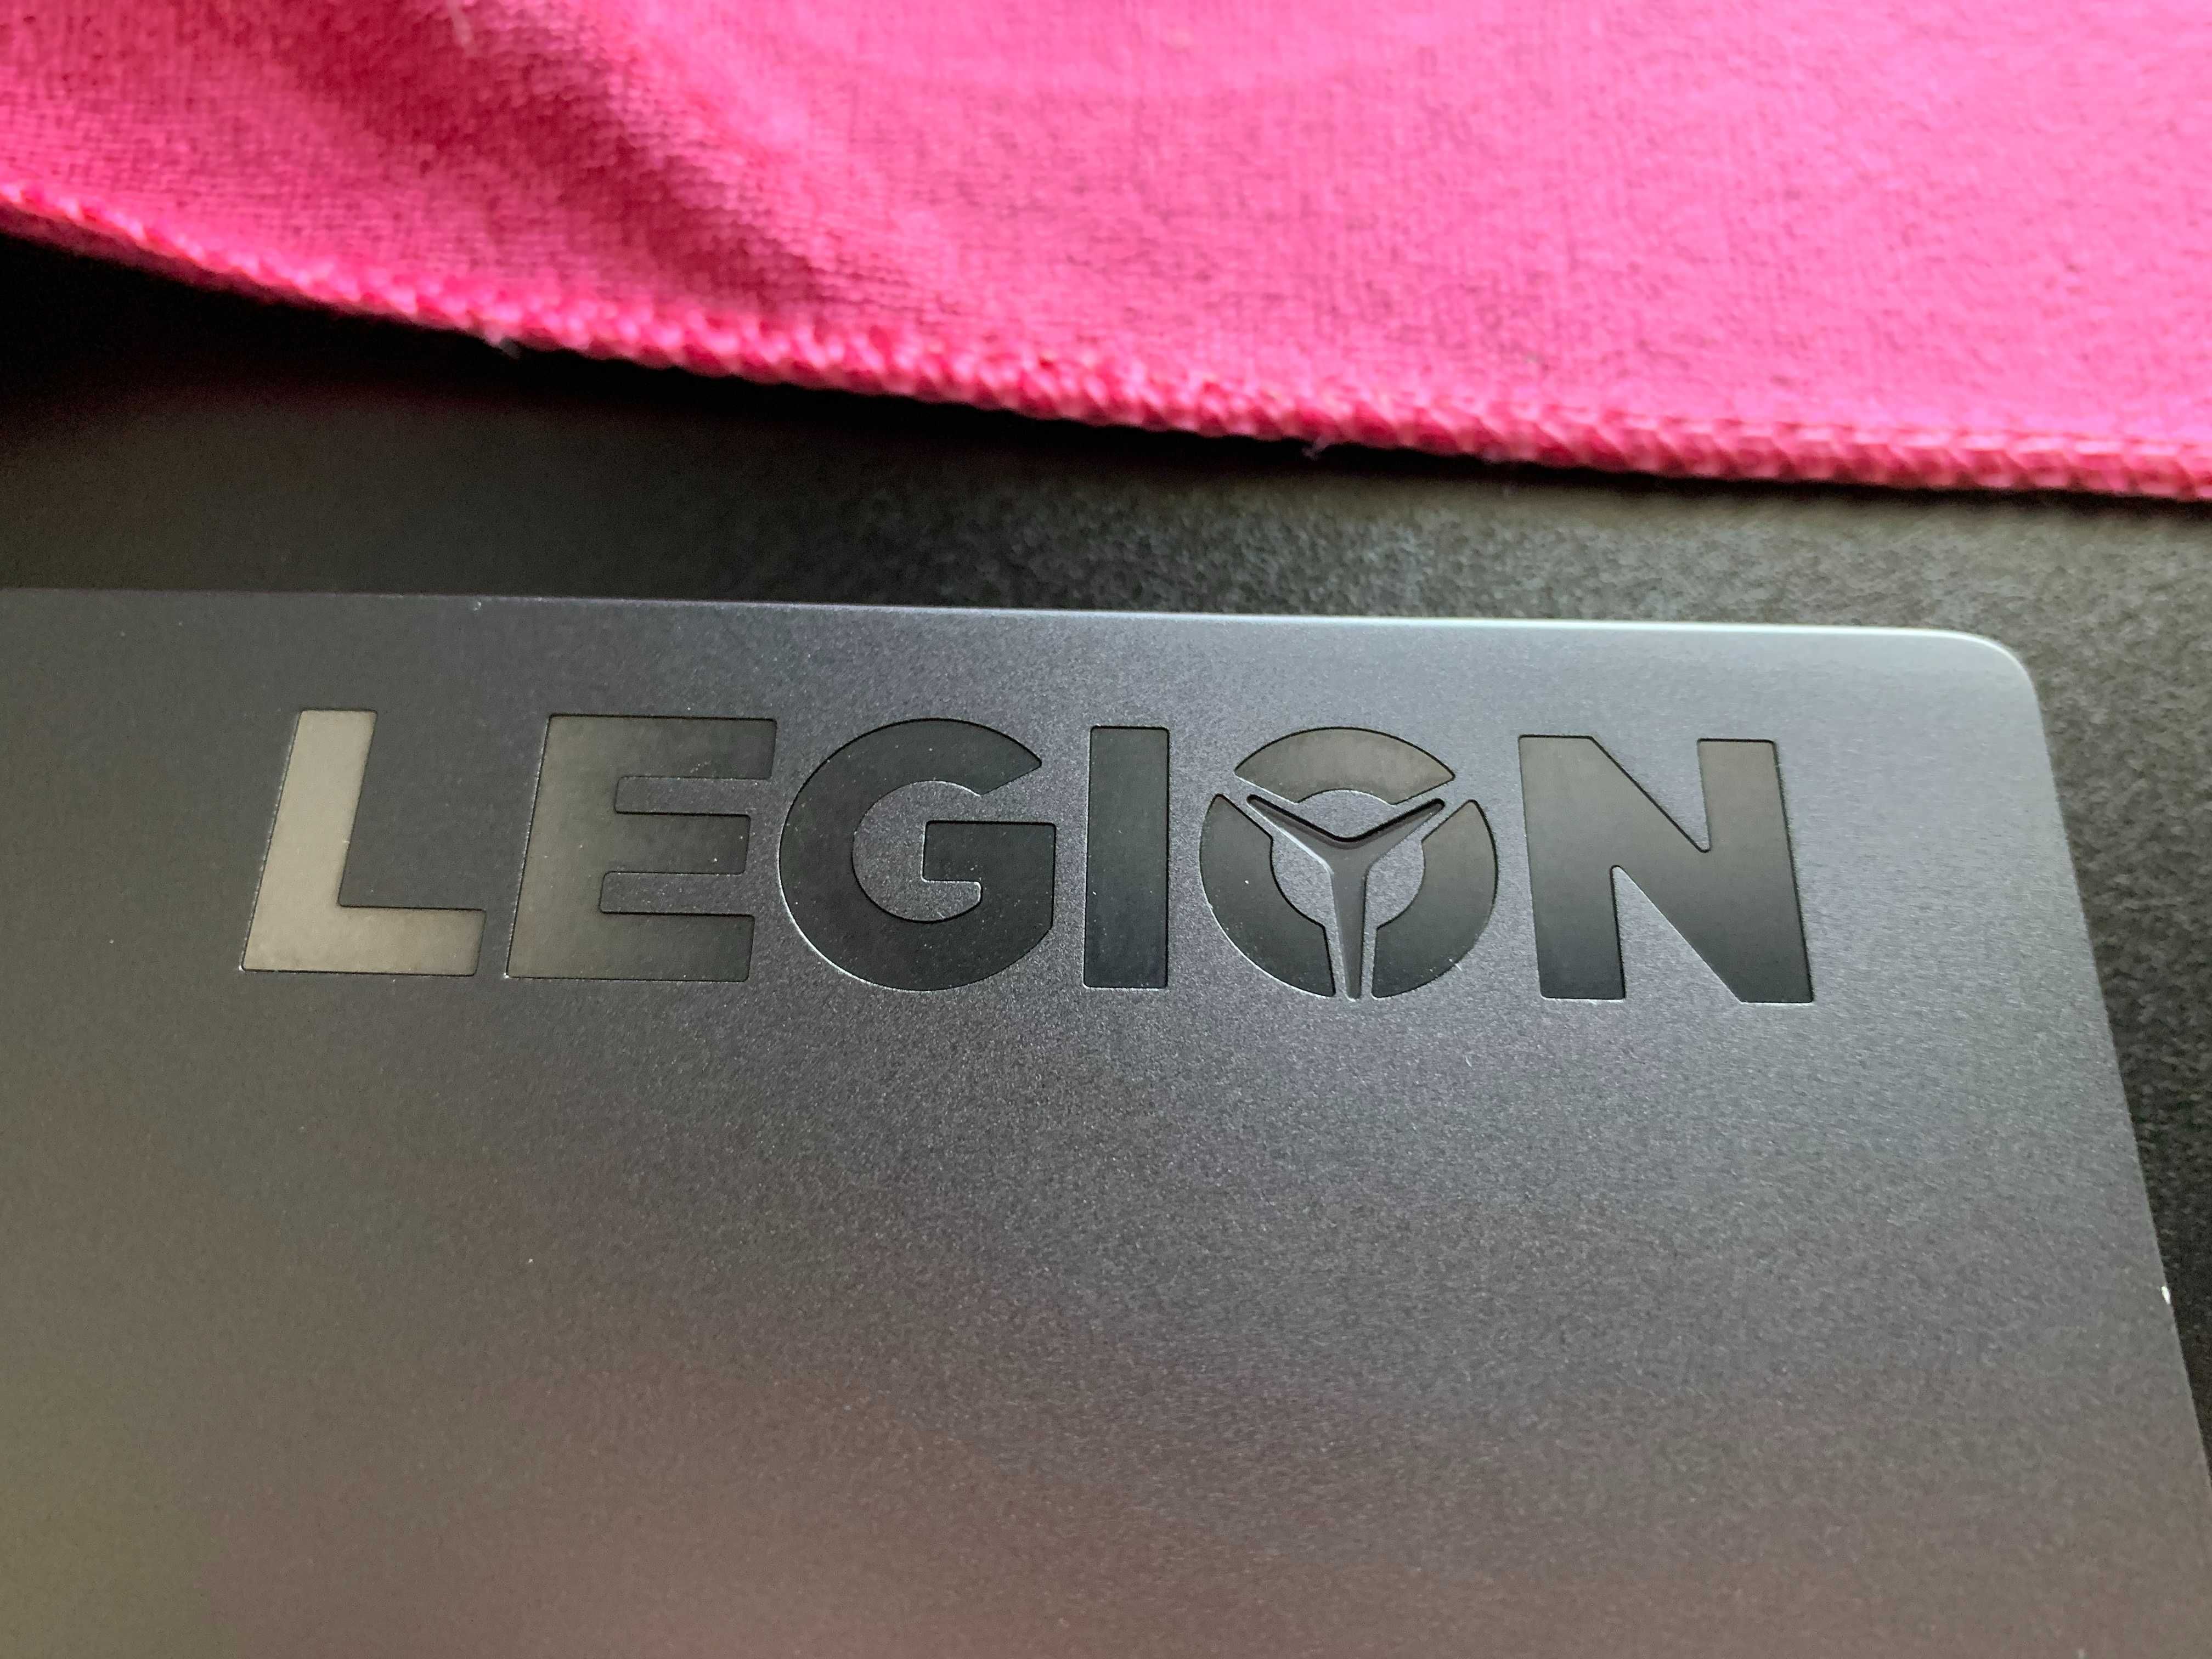 Обмен на Macbook - Lenovo Legion 7-16ITHg6 Type 82K6, продажа 60к